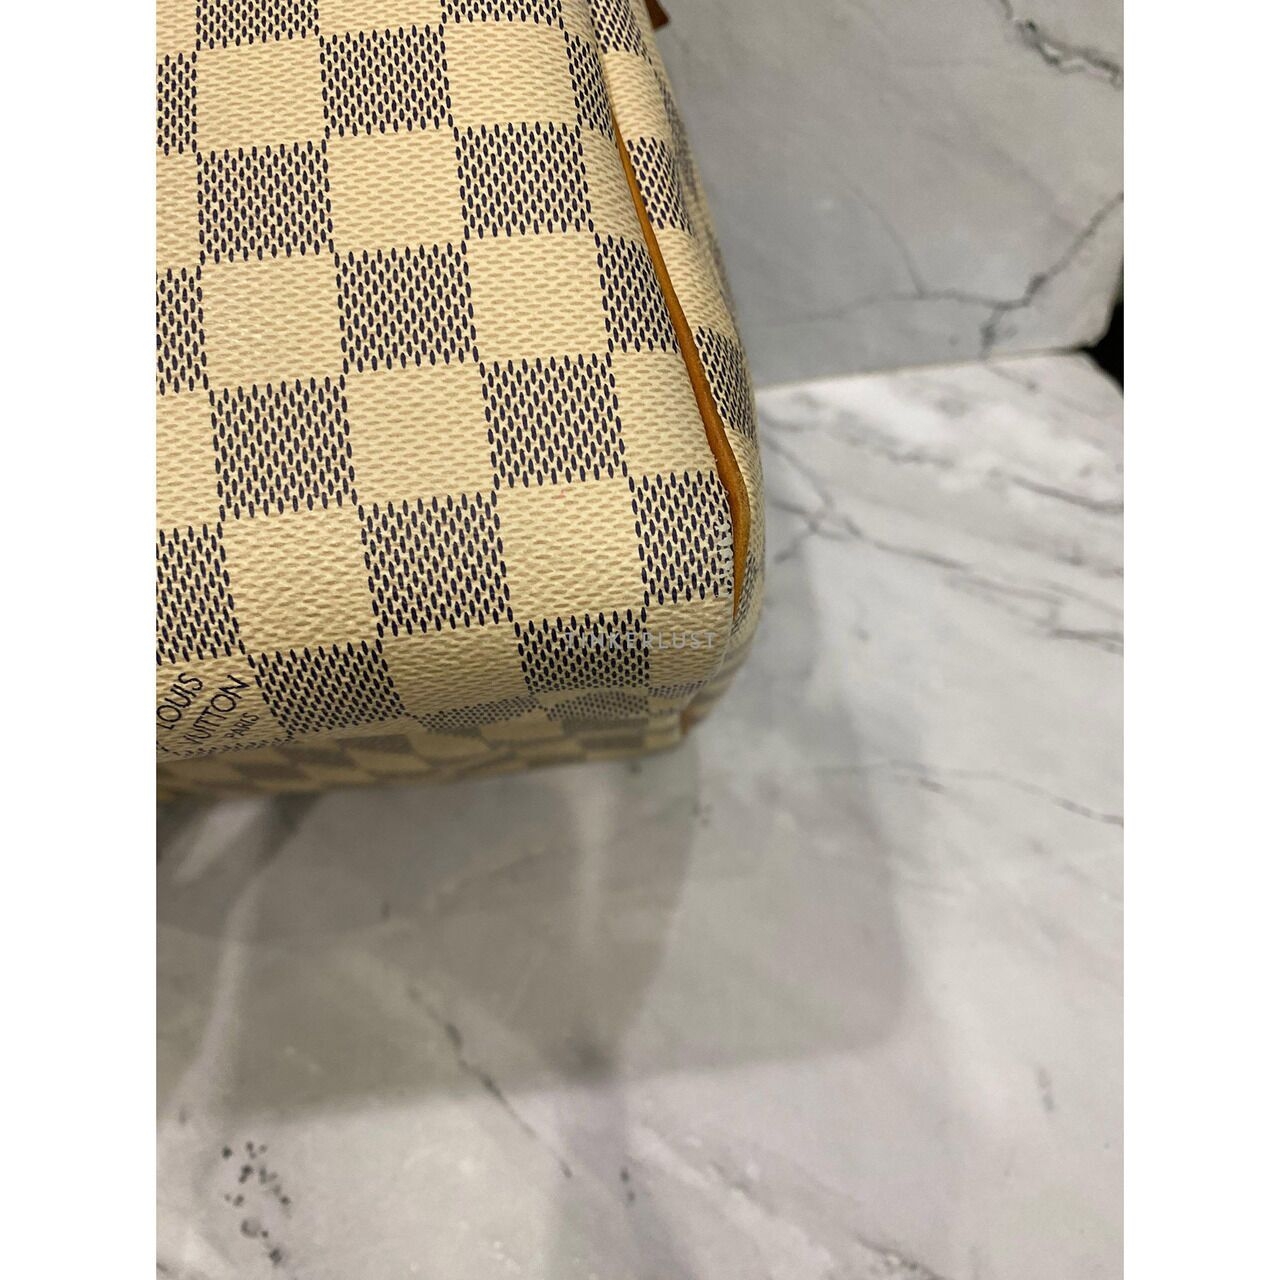 Louis Vuitton Speedy 30 Damier Azur GHW 2014 Handbag